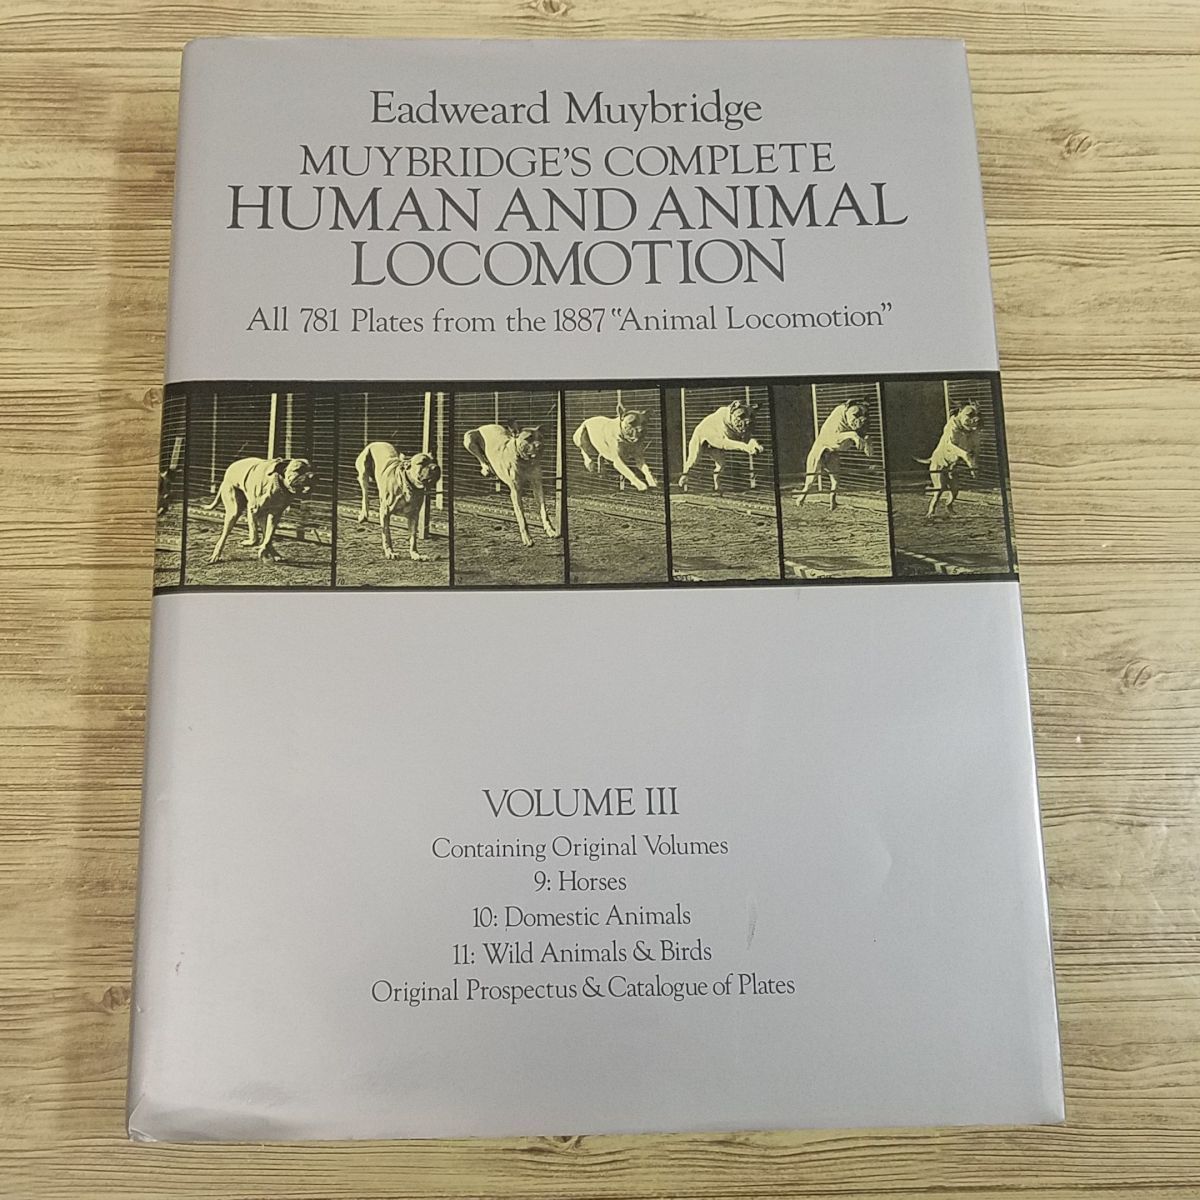 送料込】 Volume LOCOMOTION, ANIMAL AND HUMAN COMPLETE MUYBRIDGE'S